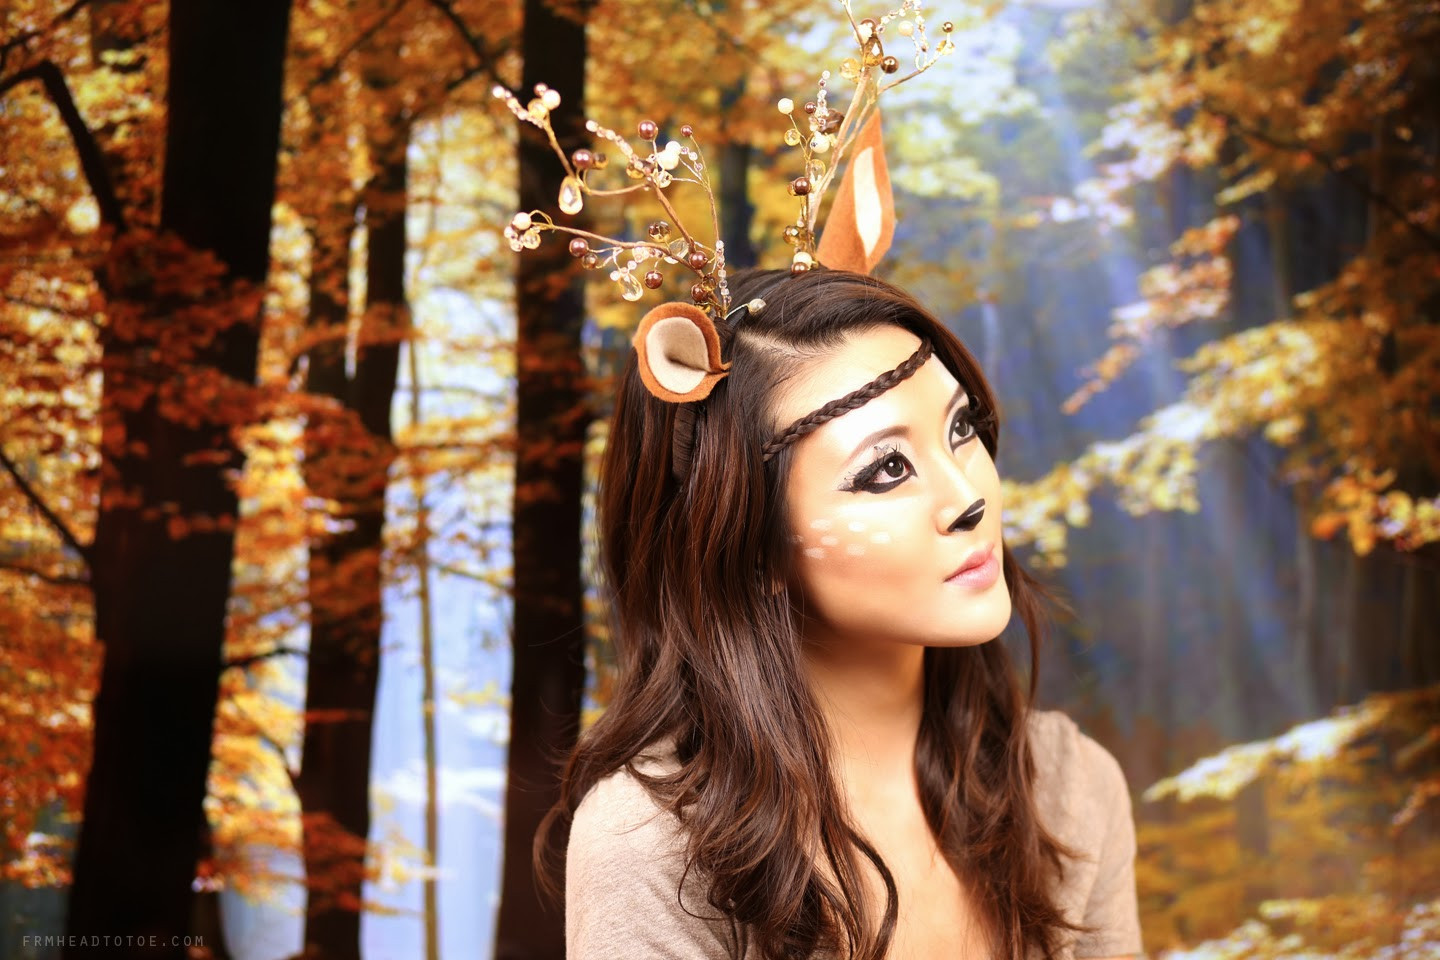 Best ideas about Deer DIY Costume
. Save or Pin Deer Makeup Tutorial Now.